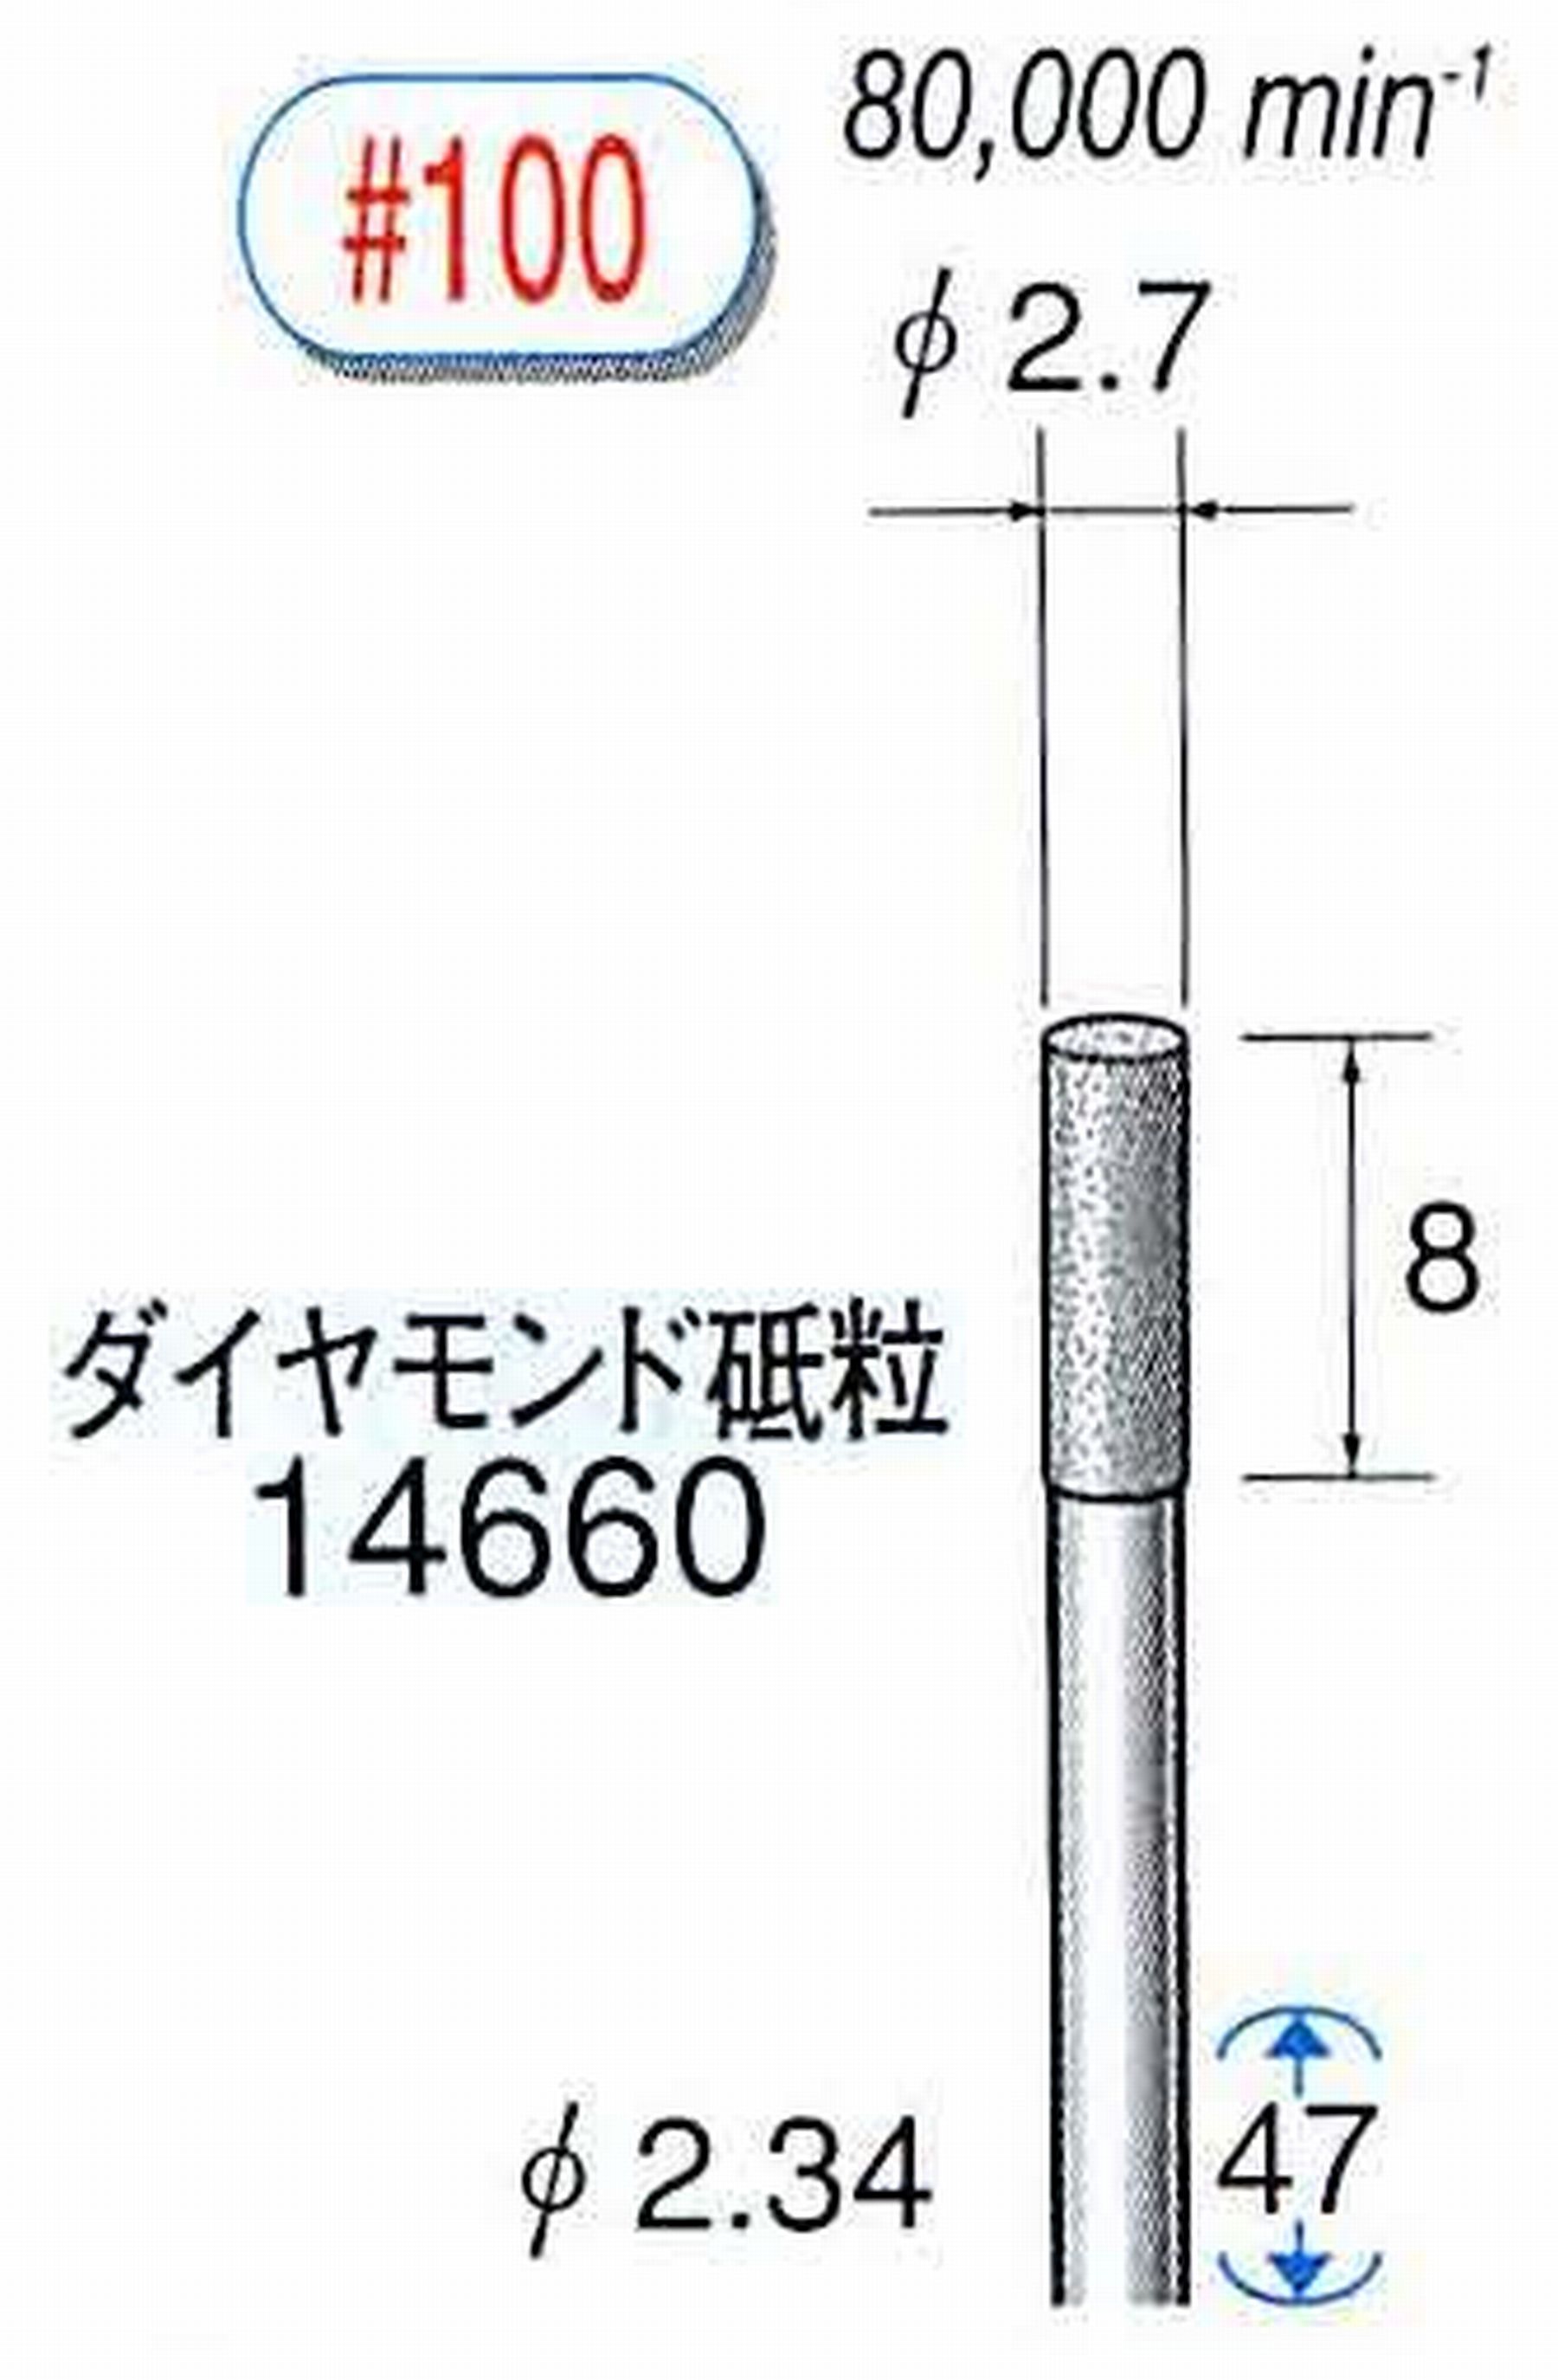 ナカニシ/NAKANISHI ダイヤモンドバー メタルボンドタイプ ダイヤモンド砥粒 軸径(シャンク)φ2.34mm 14660